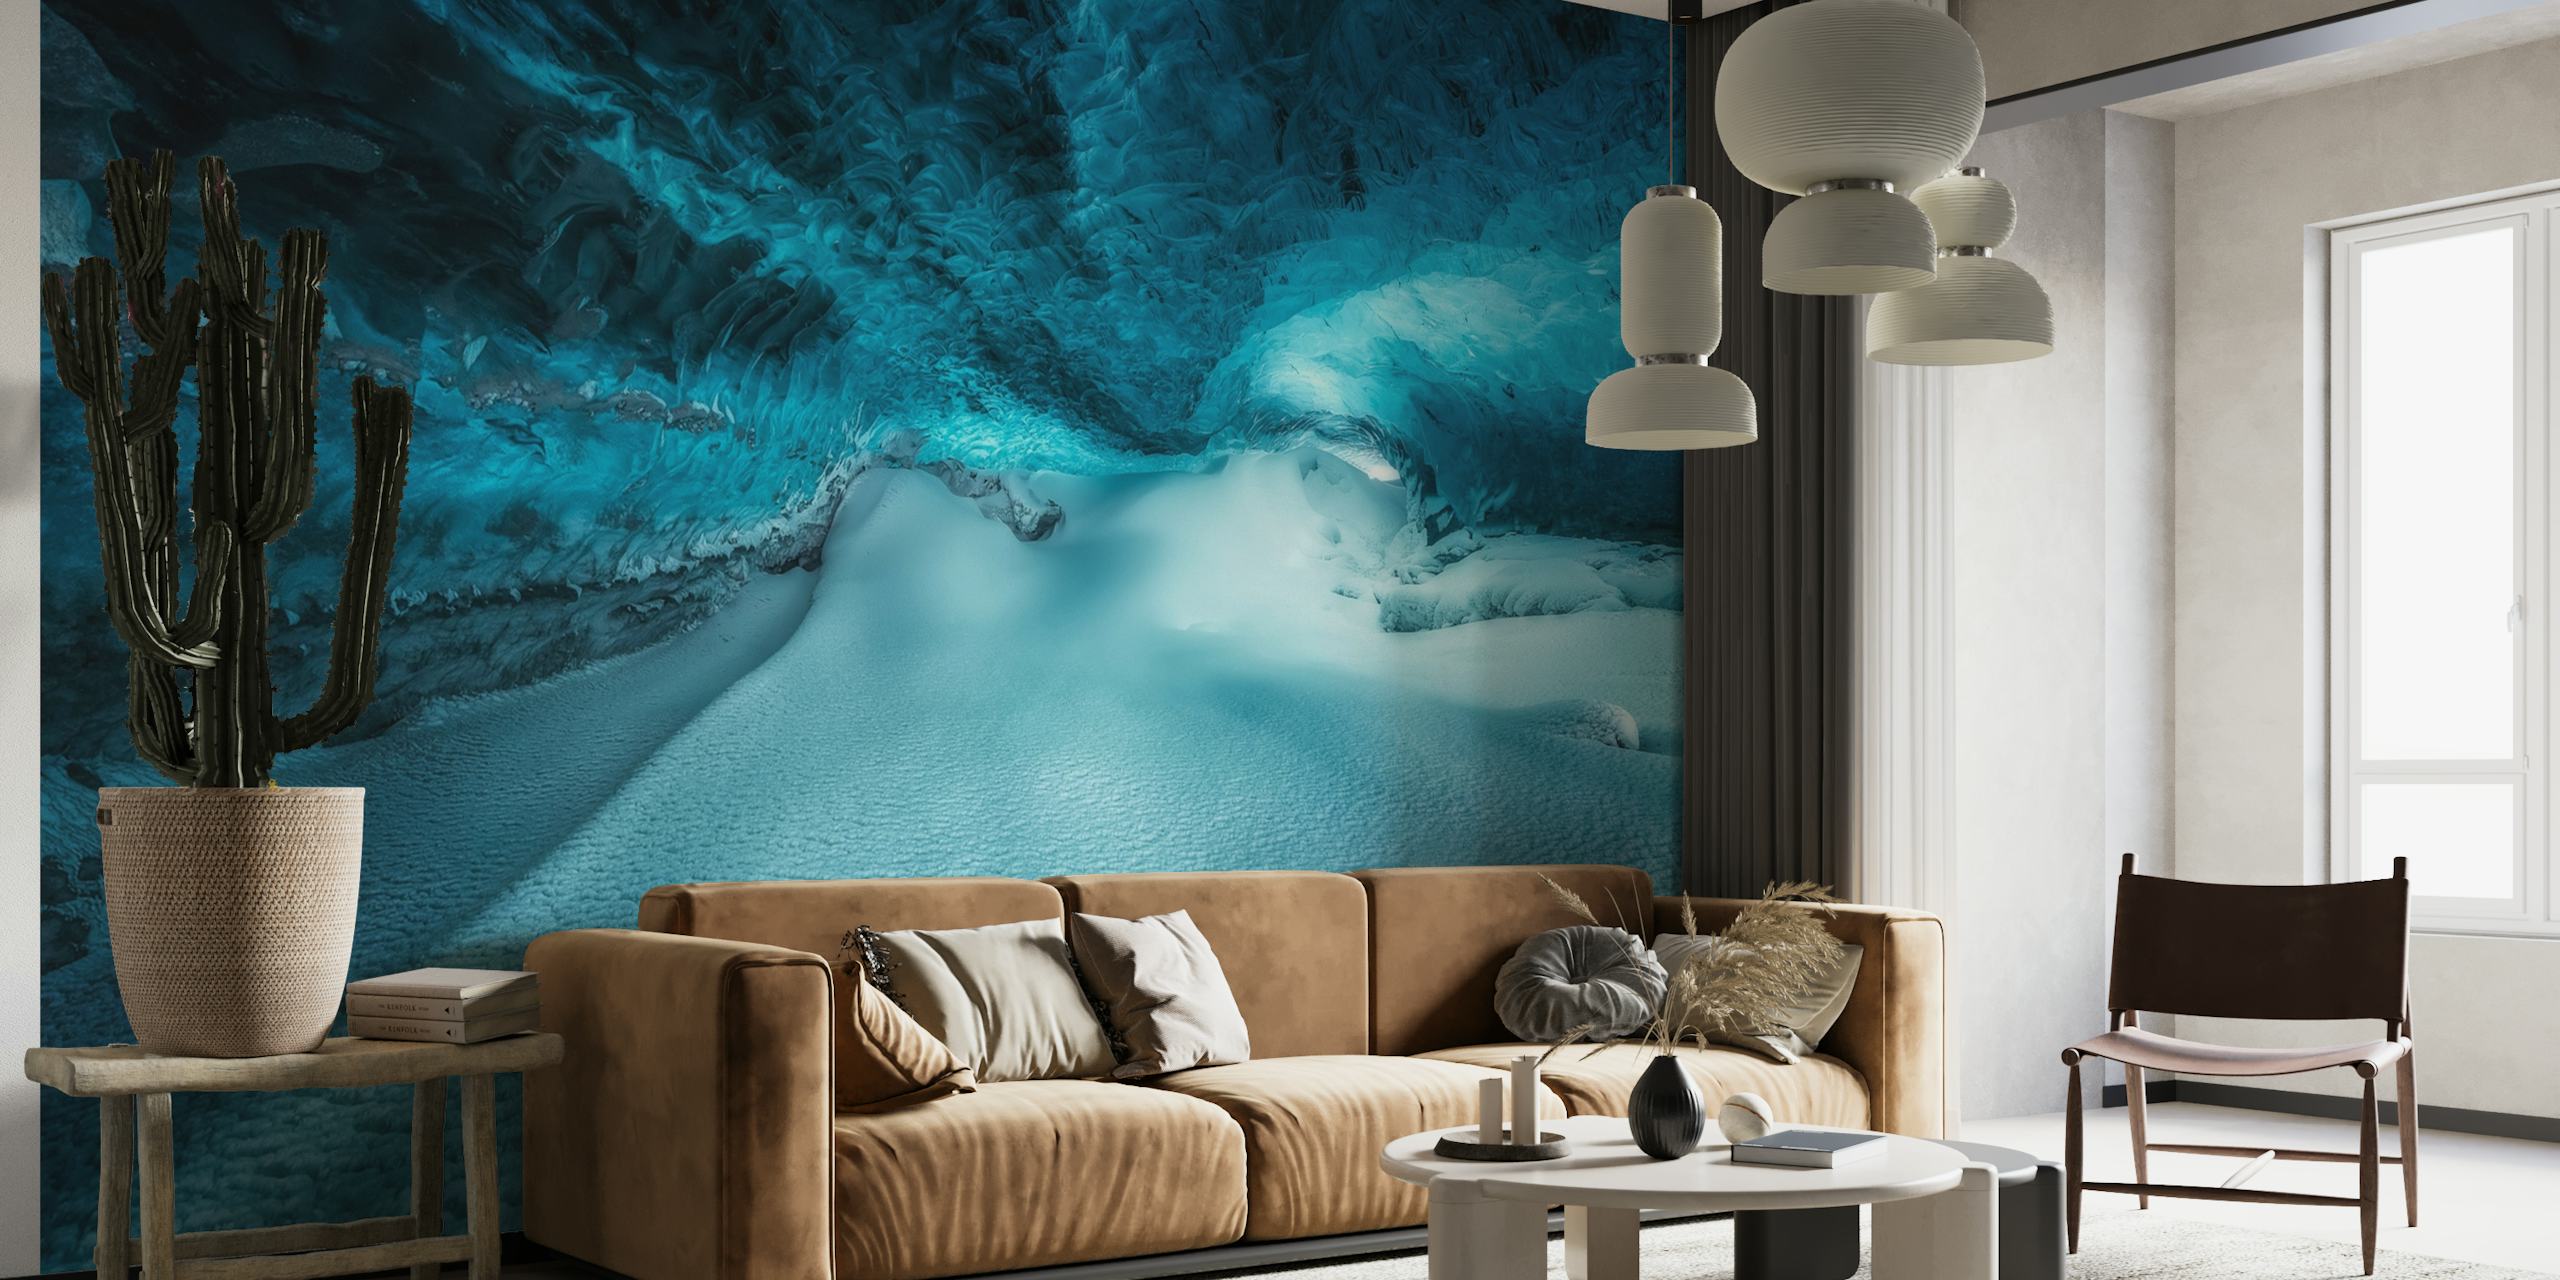 Mural de pared de una caverna de hielo submarina que muestra tonos de azul y texturas heladas